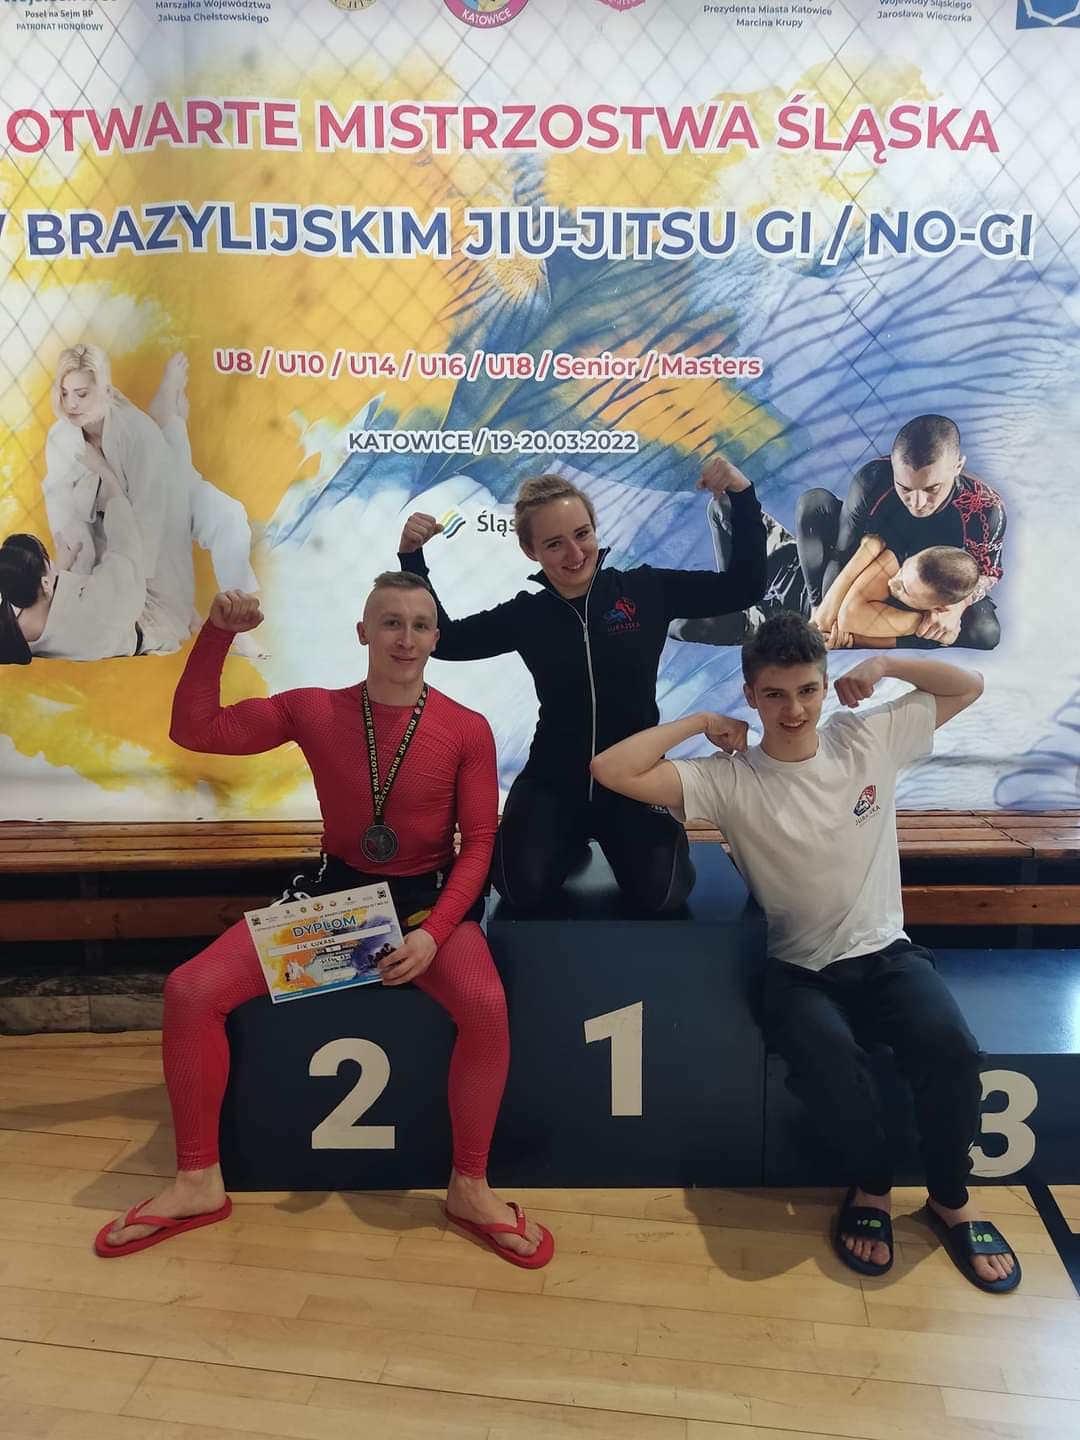 You are currently viewing Otwarte Mistrzostwa Śląska w Brazylijskim Jiu-Jitsu GI/NO-GI 19-20.03.2022.r